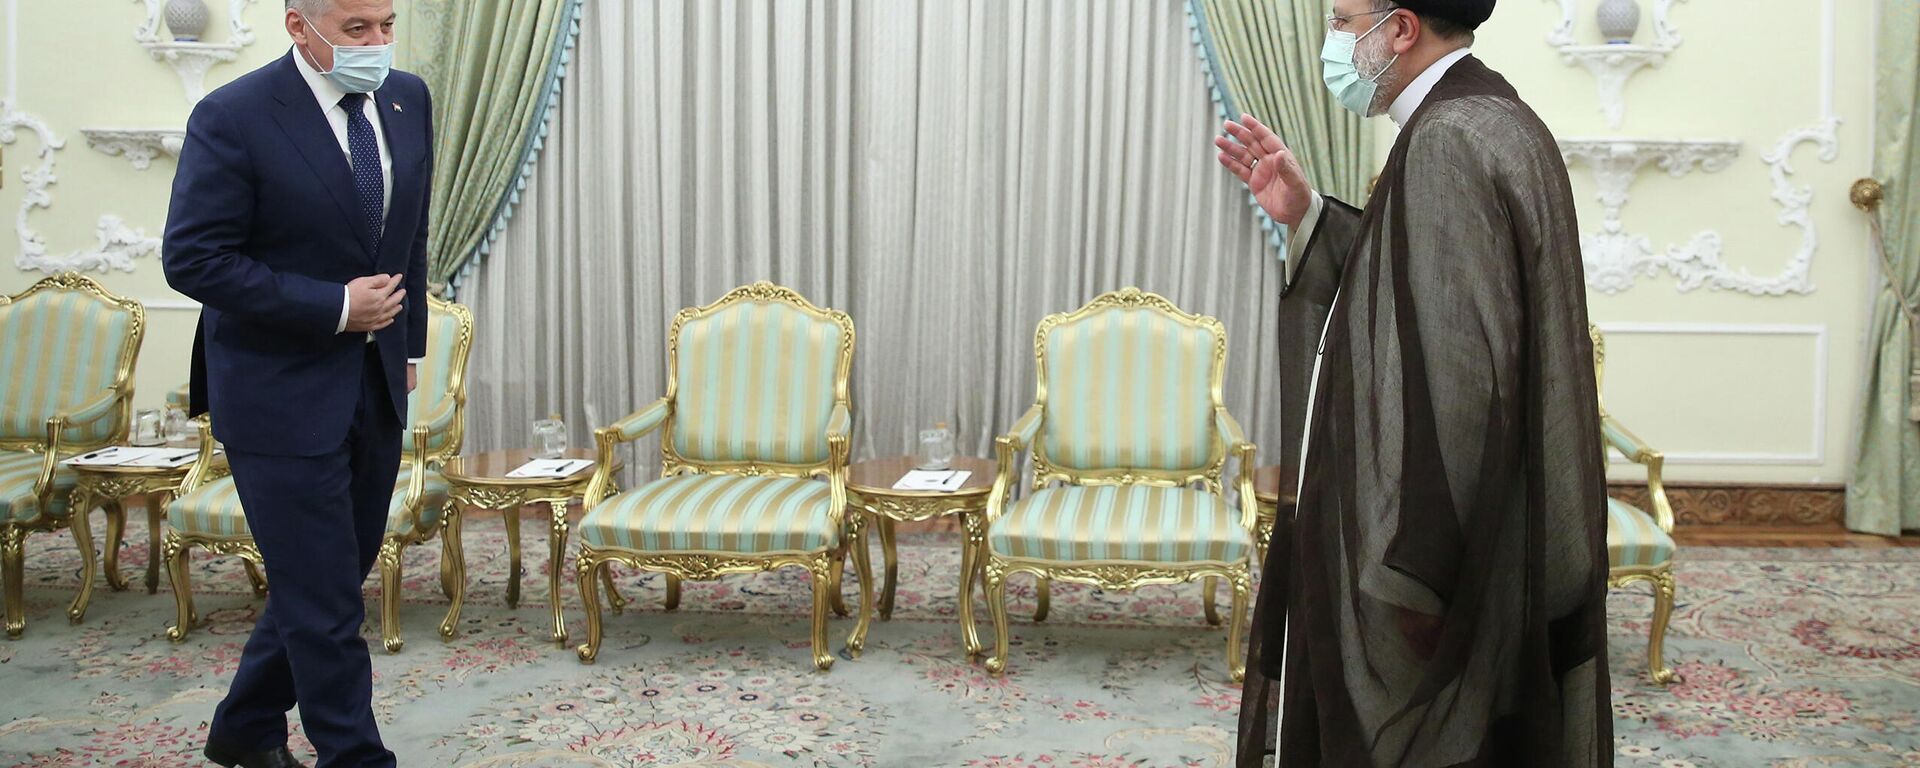 Президент Ирана встретился с министром иностранных дел Таджикистана - Sputnik Тоҷикистон, 1920, 27.10.2021